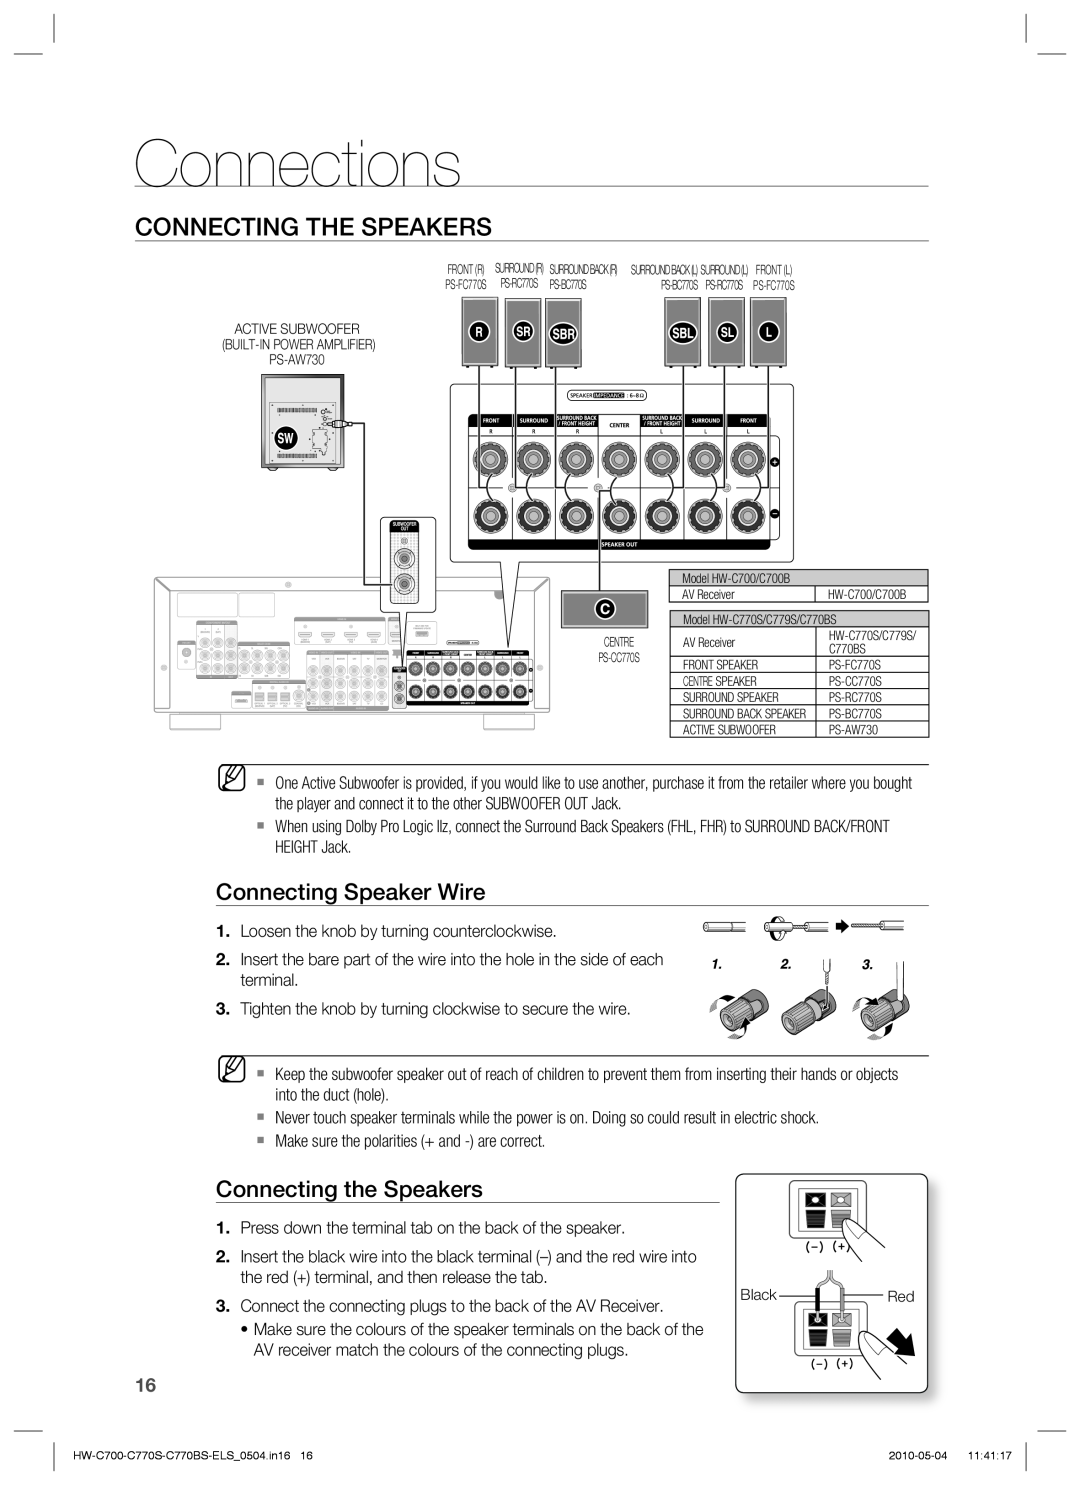 Samsung HW-C700/XEE, HW-C770S/XEN Connections, Connecting The Speakers, Connecting Speaker Wire, Connecting the Speakers 